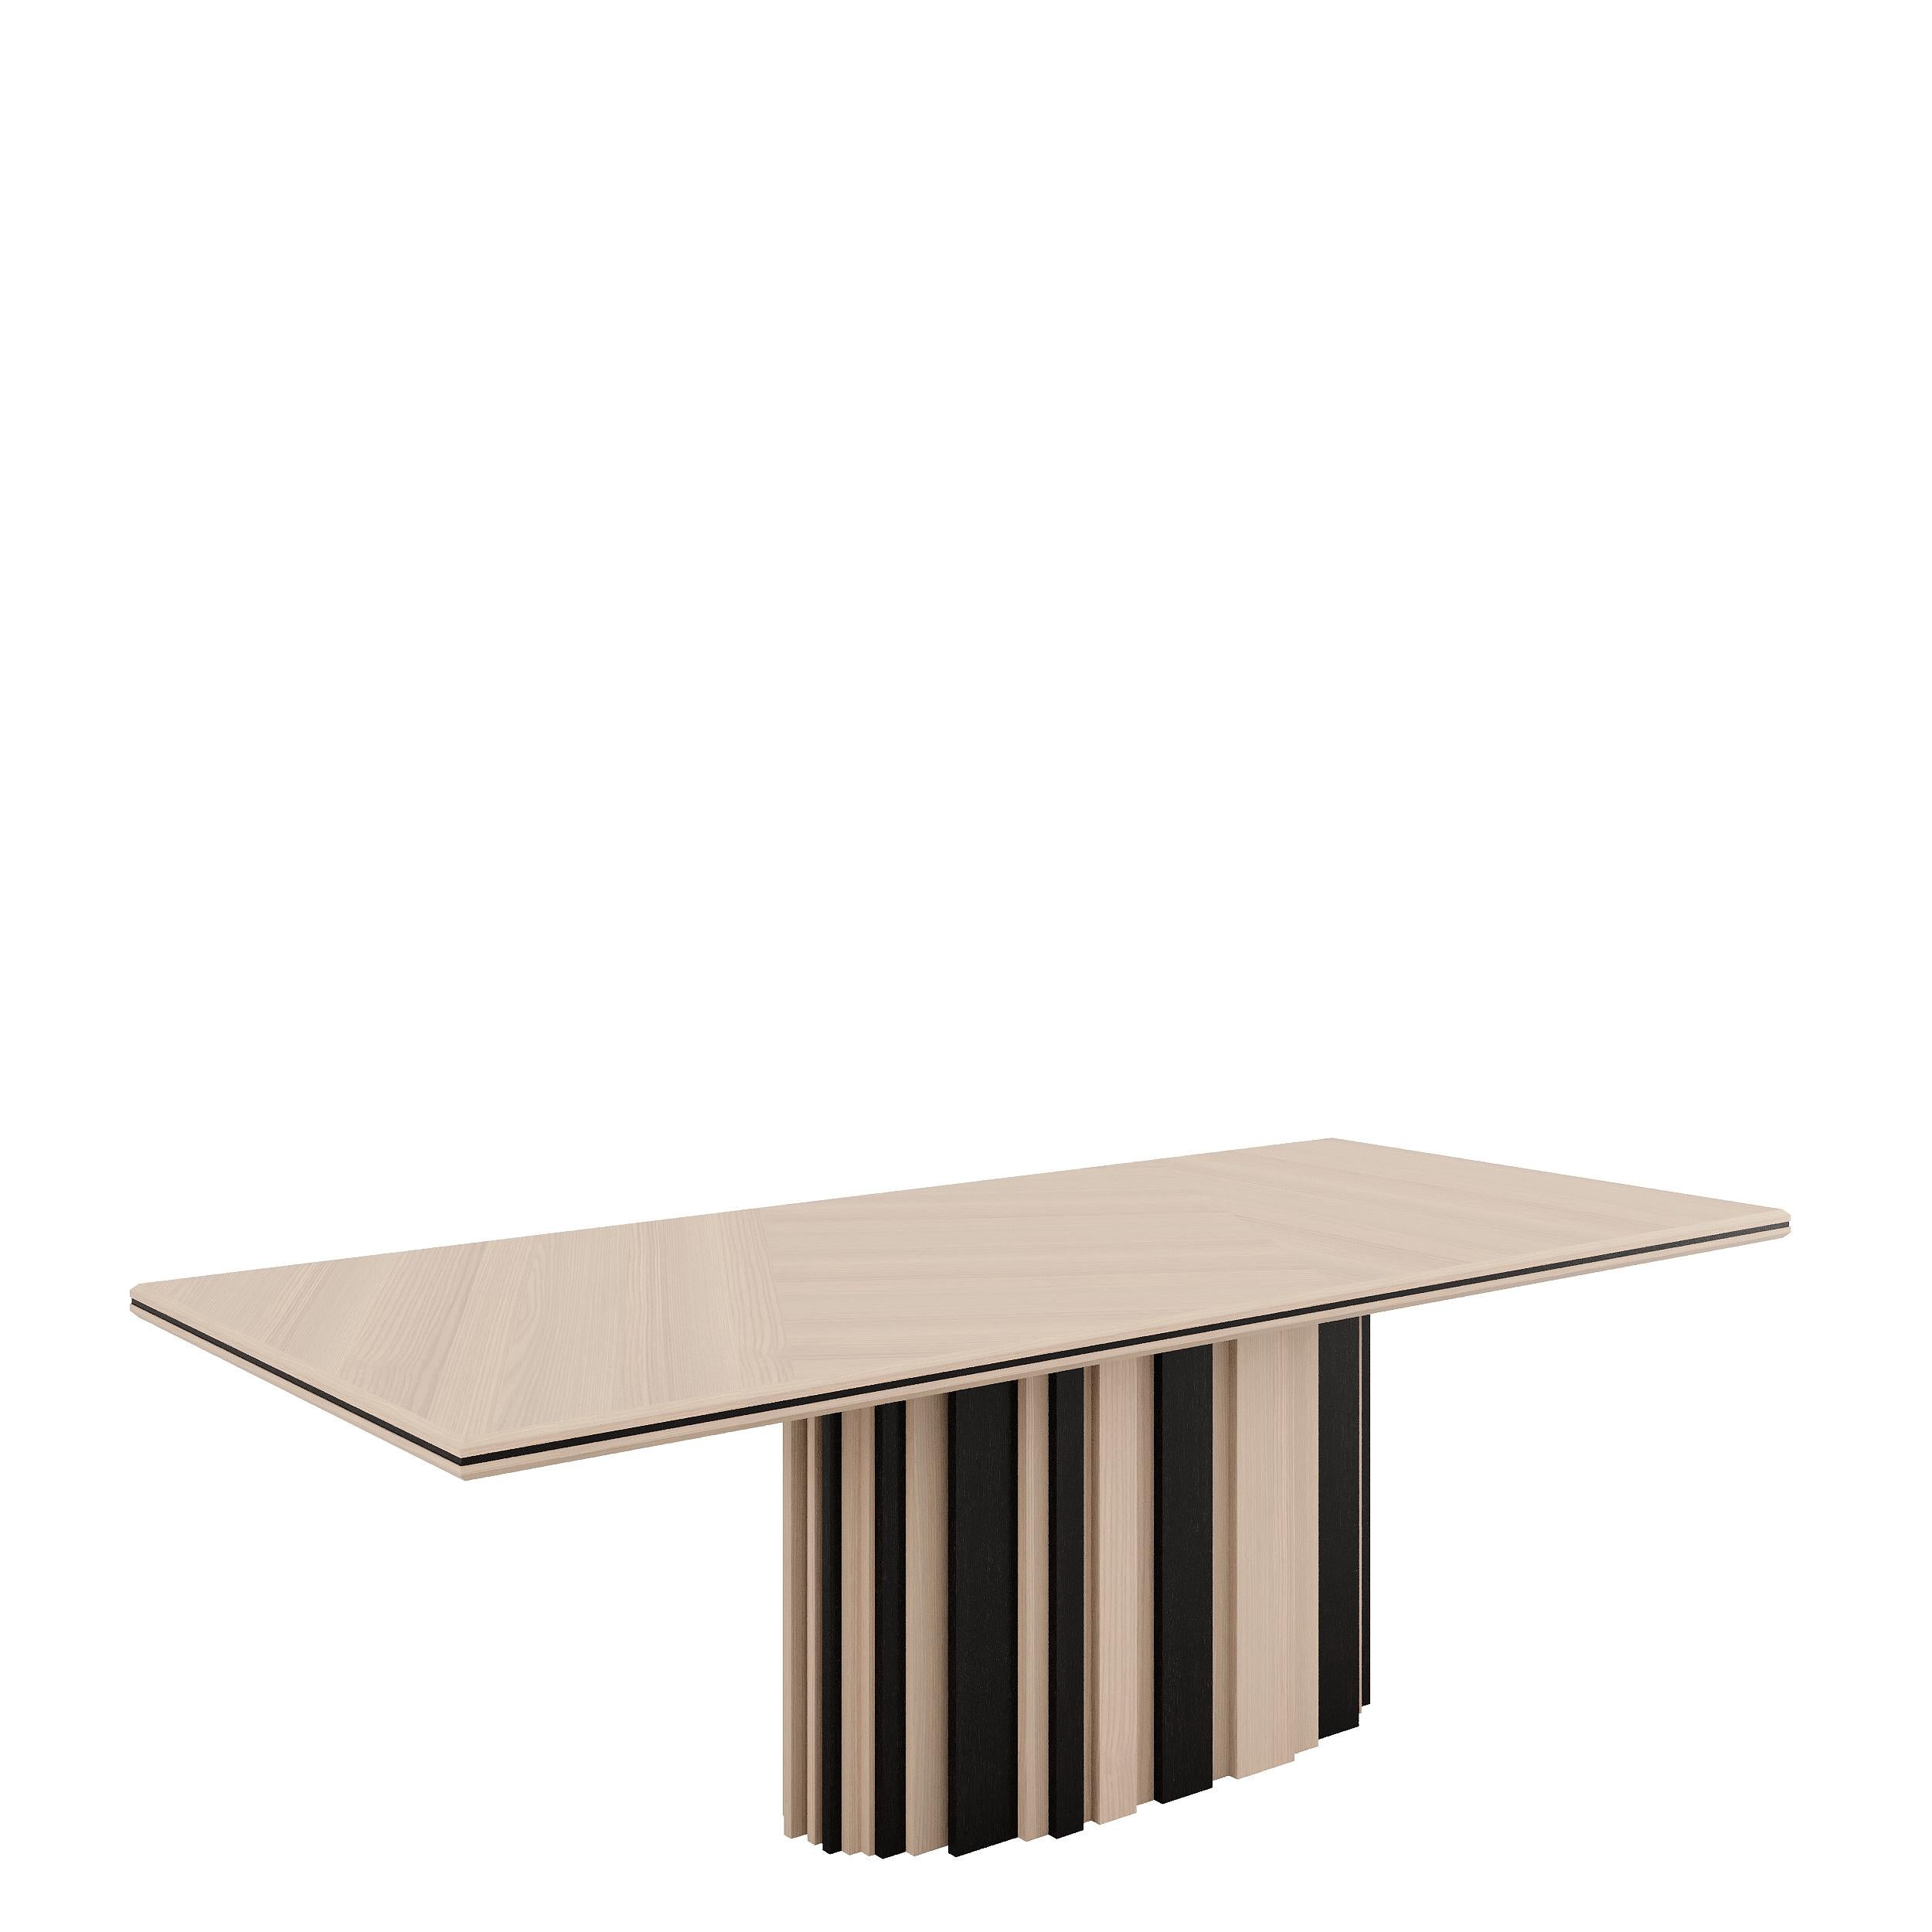 Der Esstisch BETSY zeichnet sich durch seine geometrische Schlichtheit aus, wobei die große Platte auf dem länglichen, zentralen Sockel ruht, der dem Tisch Stabilität und Halt gibt; Betsy ist in Lack oder furniertem Holz erhältlich und erlaubt sogar